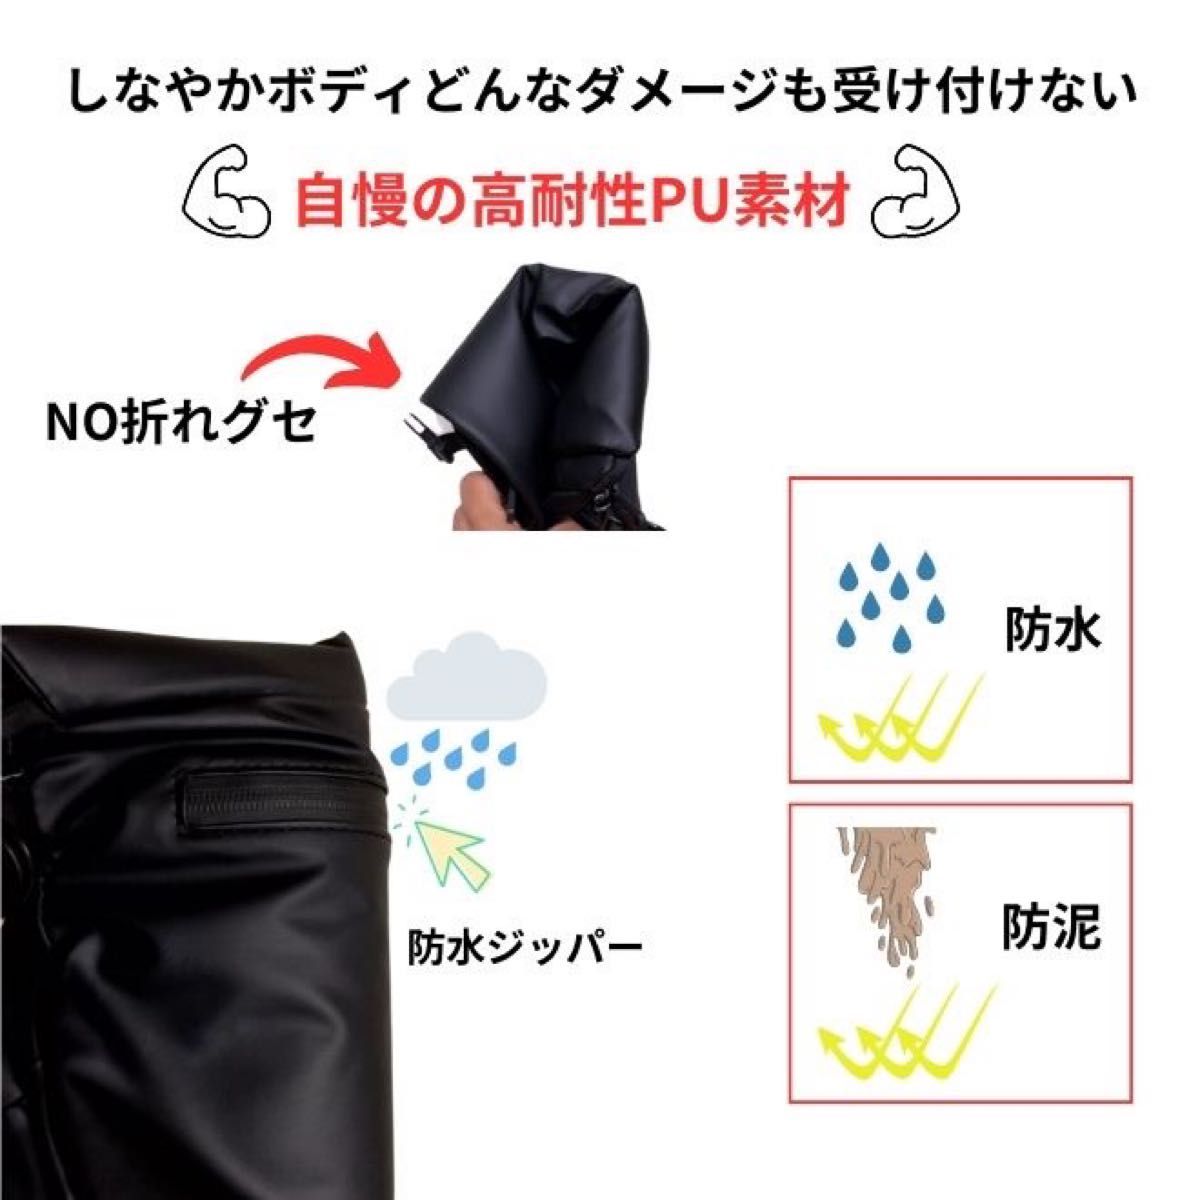 メンズ ショルダーバッグ メンズバッグ 肩掛けカバン 防水 撥水 普段使い メッセンジャーバッグ 軽量 オリジナル ブラック色